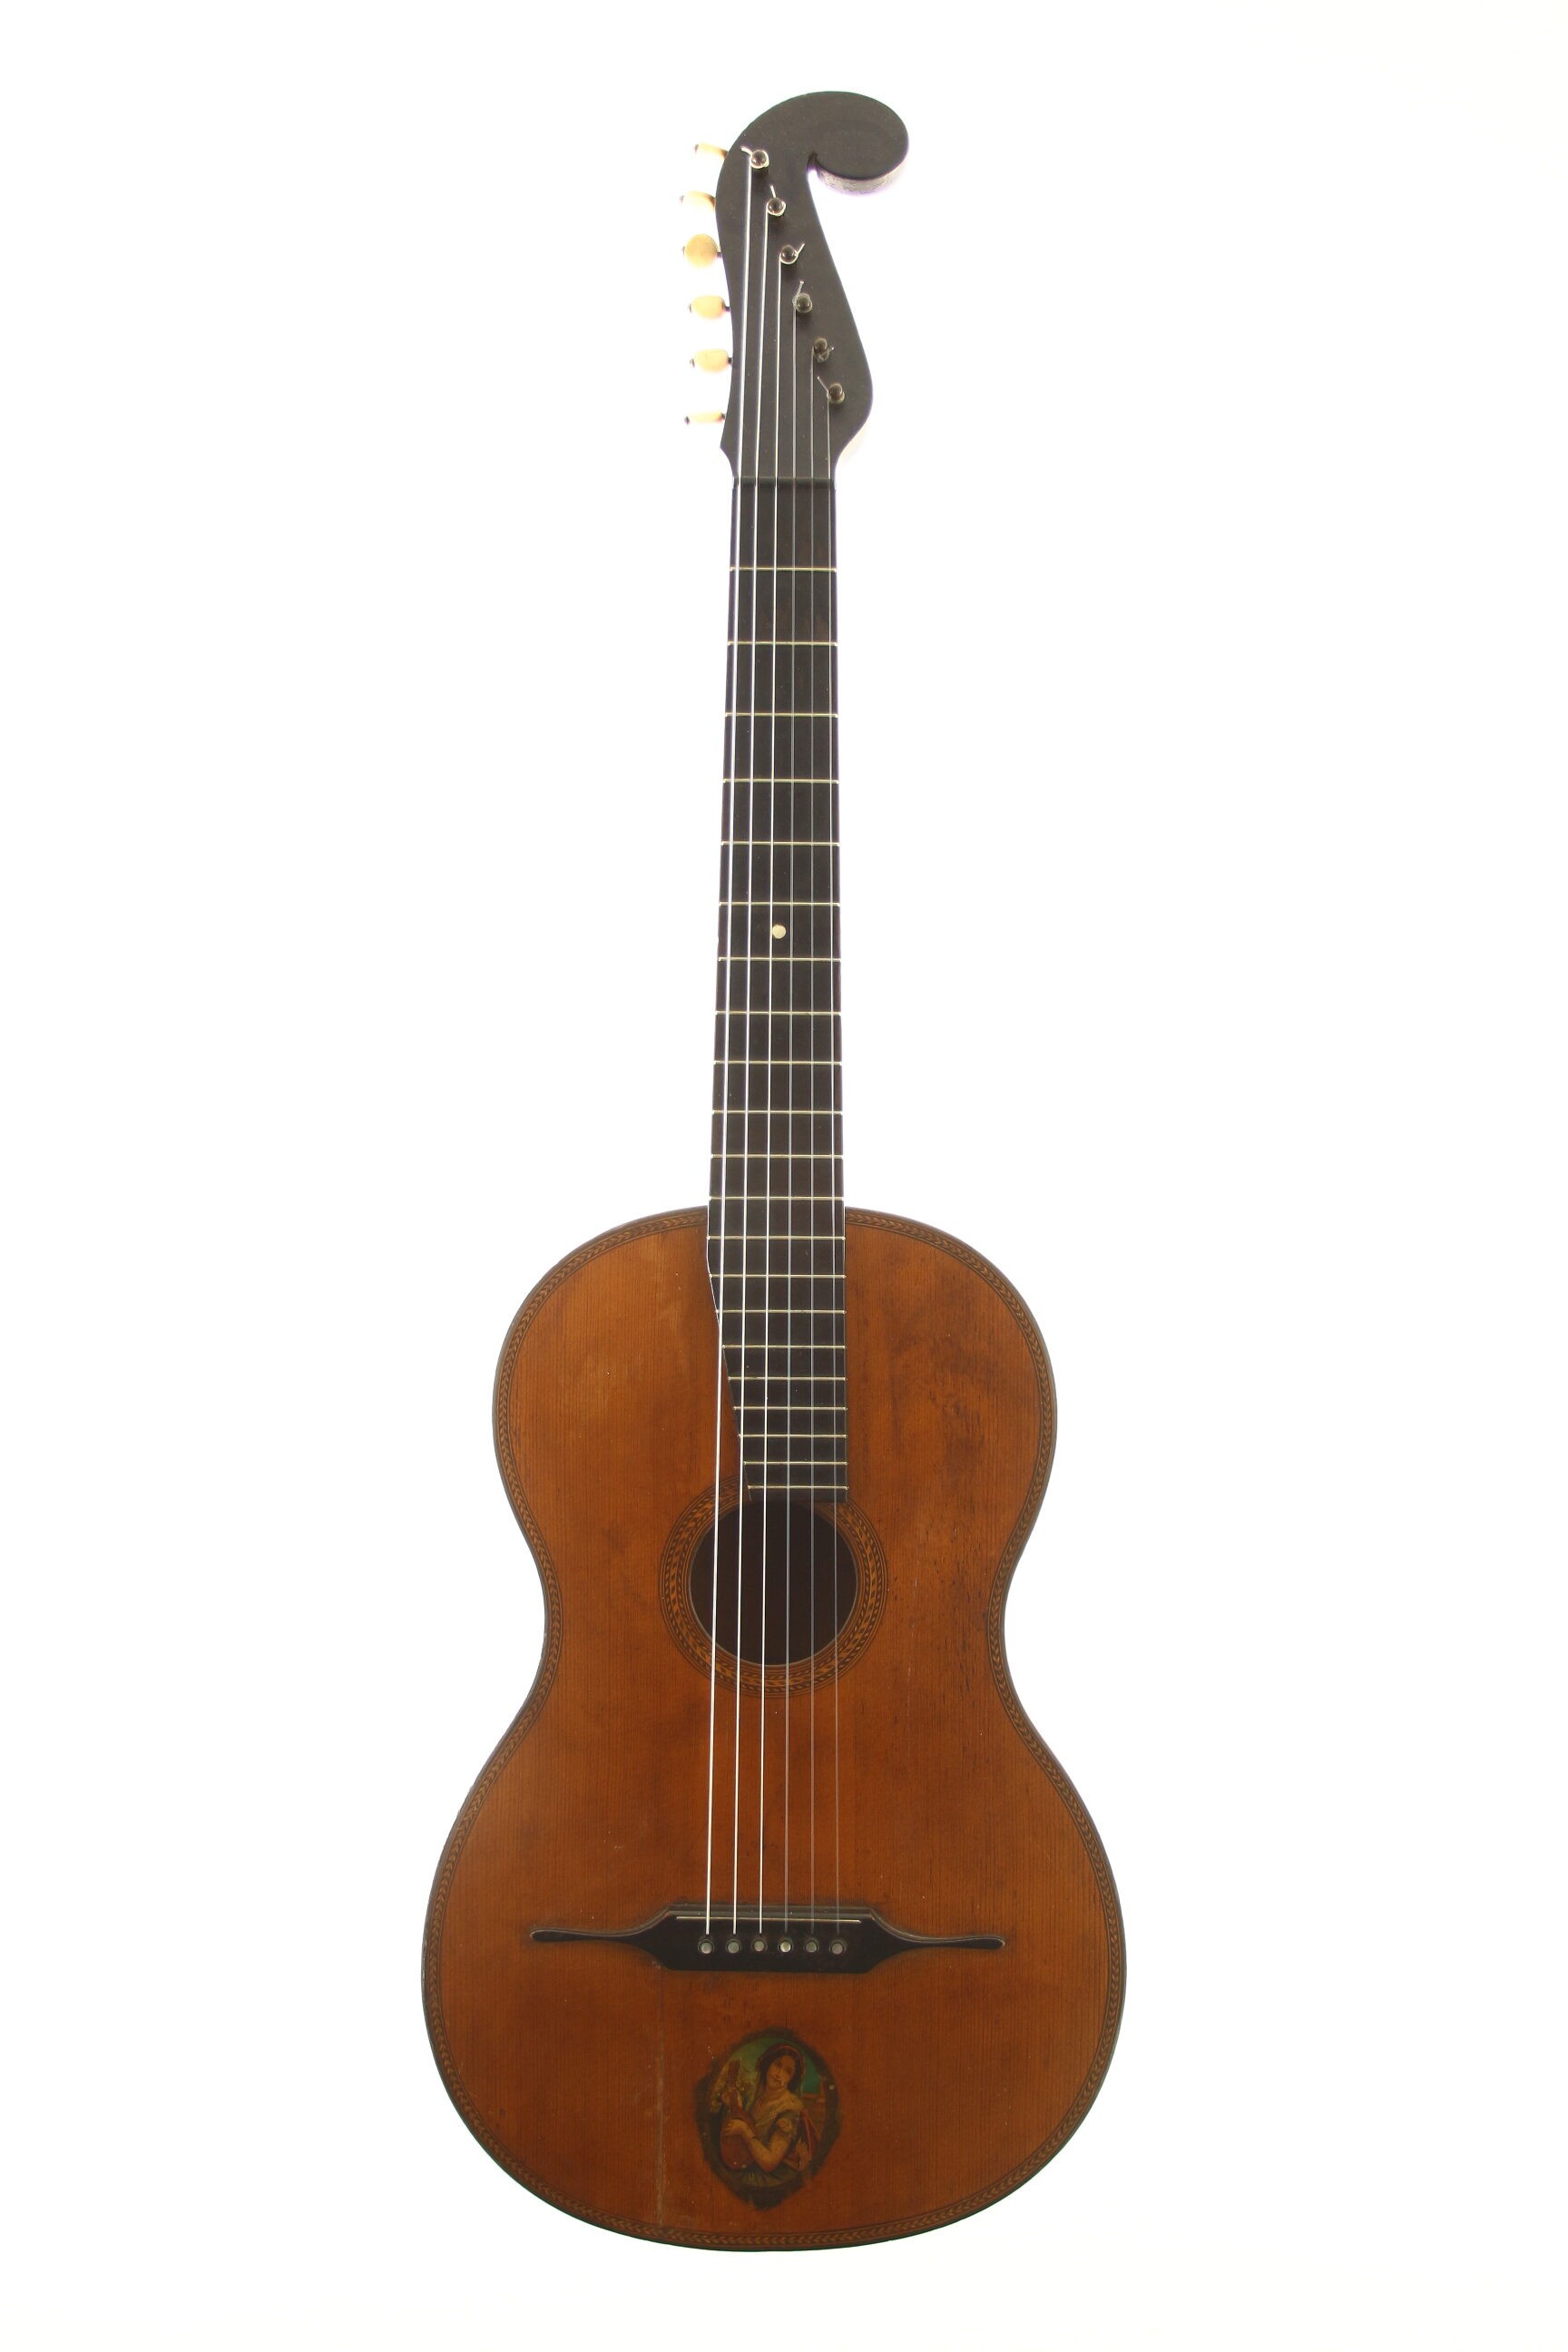 bartolini guitar for sale